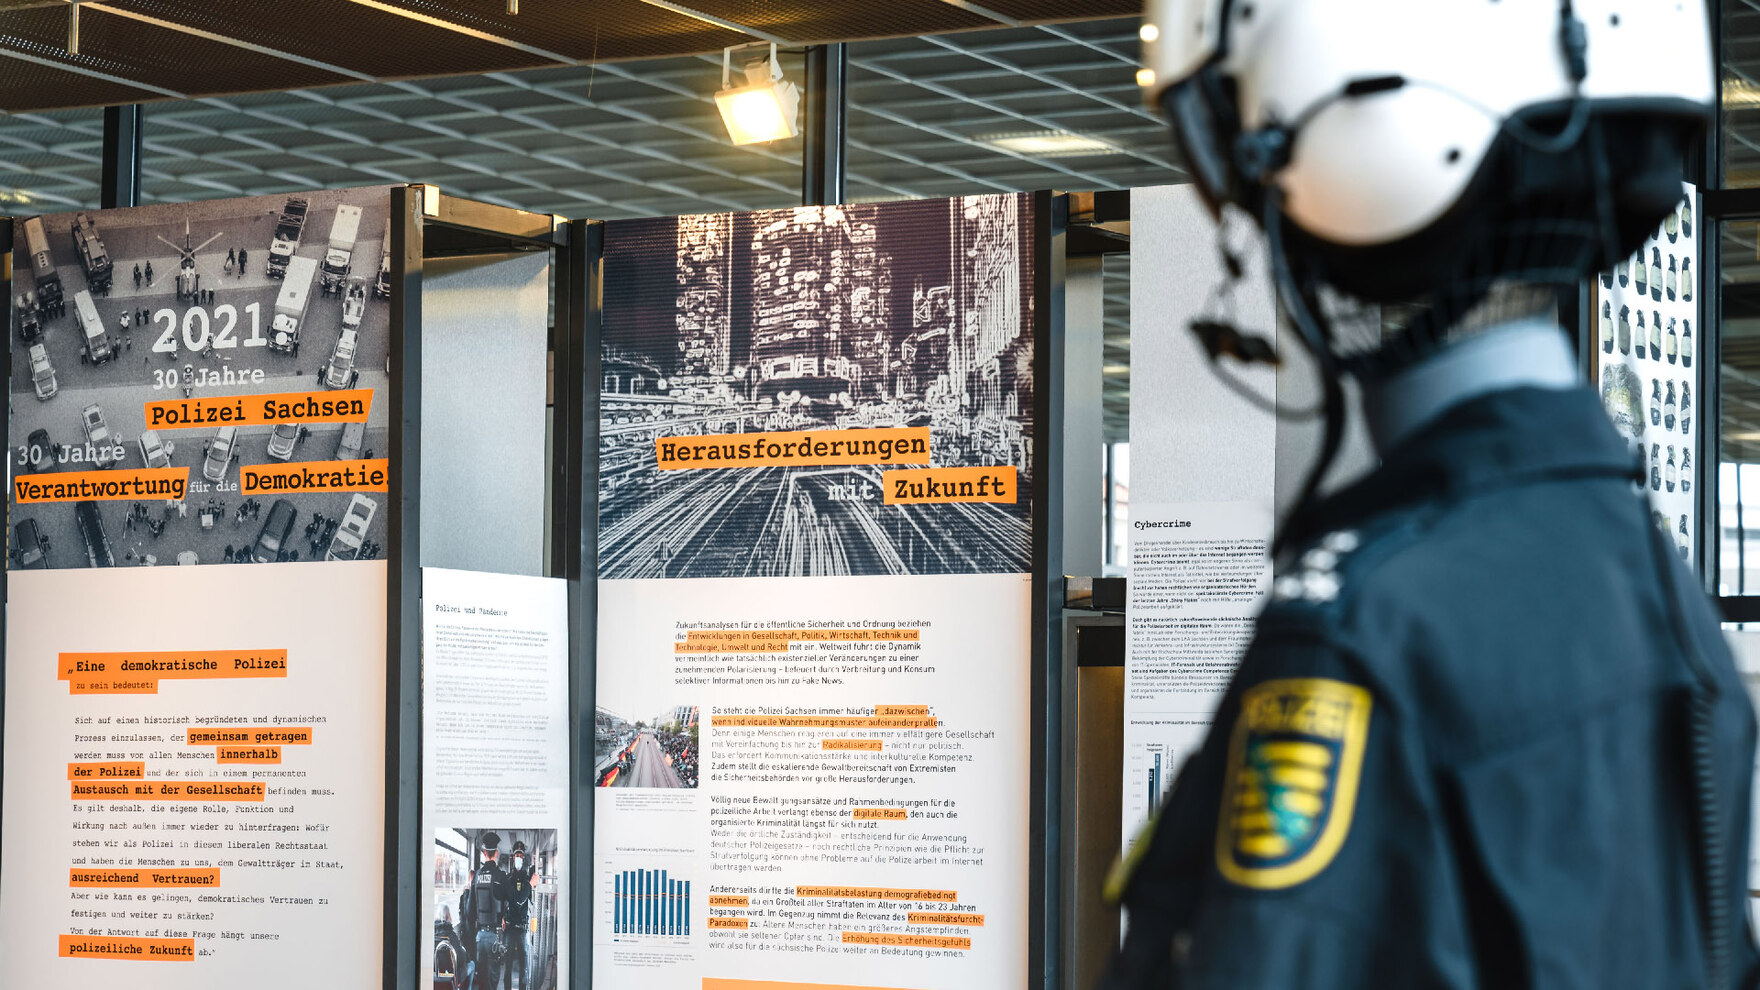 Das Foto zeigt Schautafeln der Ausstellung mit Bildern und Texten. Auf einer Tafel steht: »2021 – 30 Jahre Polizei Sachsen – 30 Jahre Verantwortung für die Demokratie«. Rechts ist unscharf eine Polizeiuniform unscharf zu sehen.